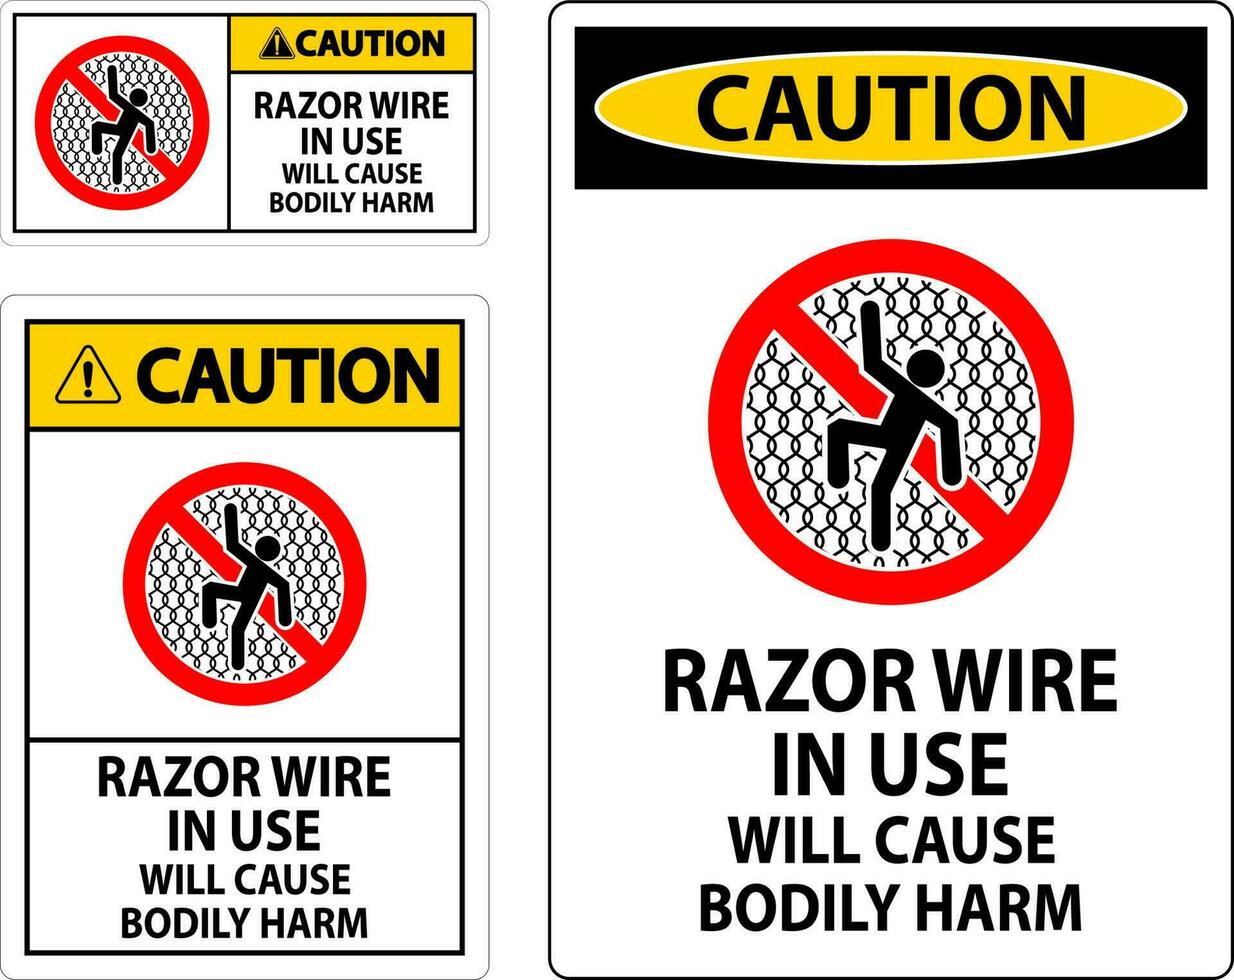 precaución firmar maquinilla de afeitar cable en utilizar será porque corporal daño vector